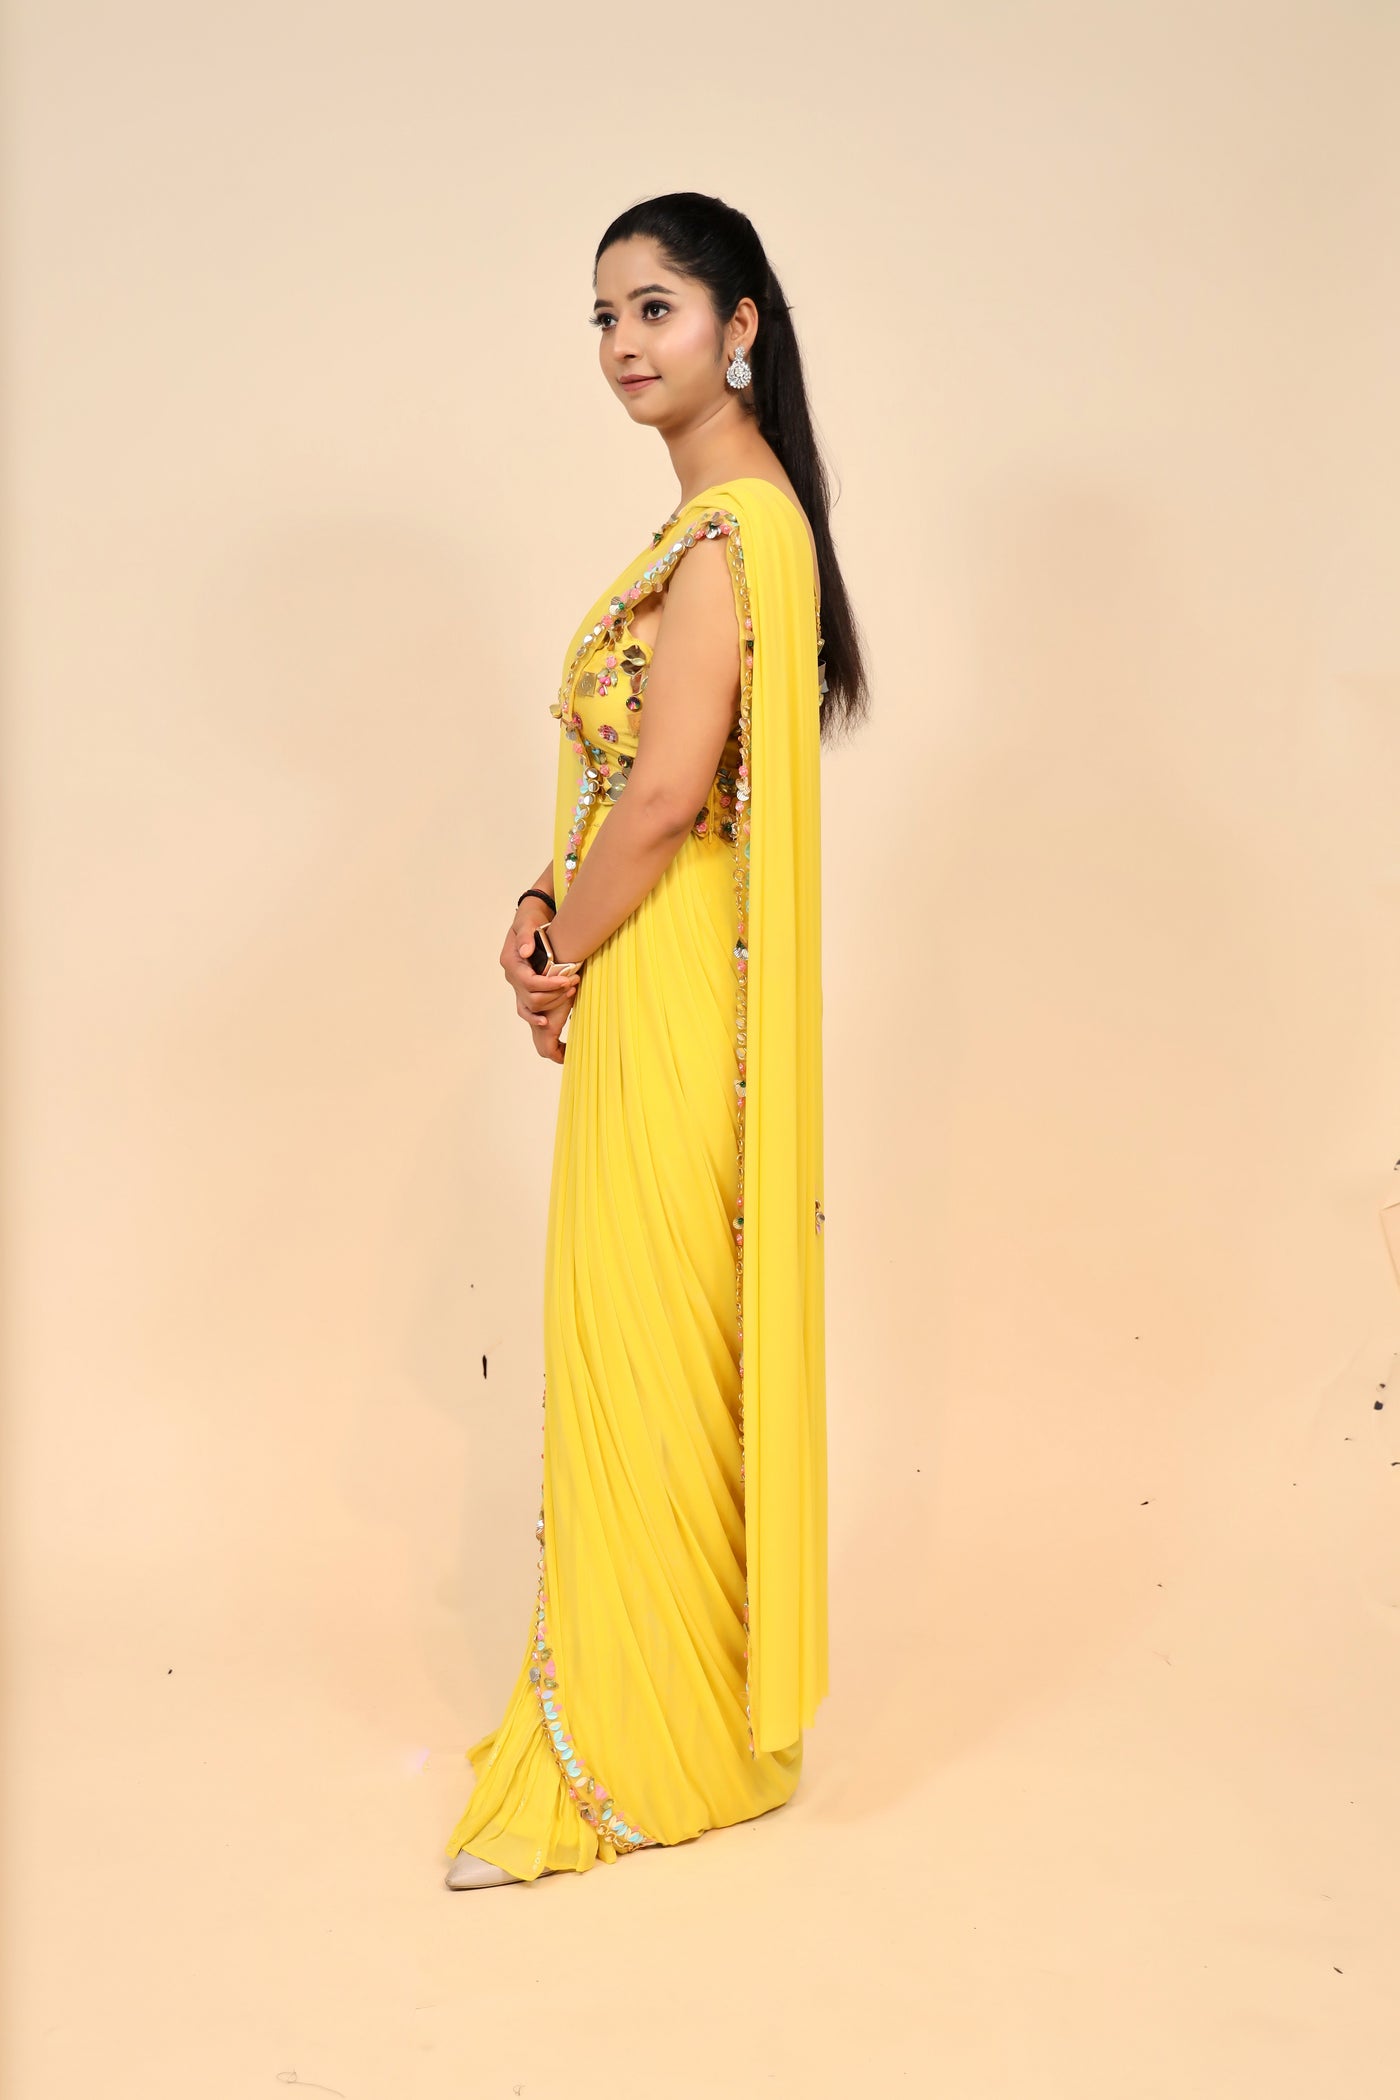 woman posing in yellow chiffon dress